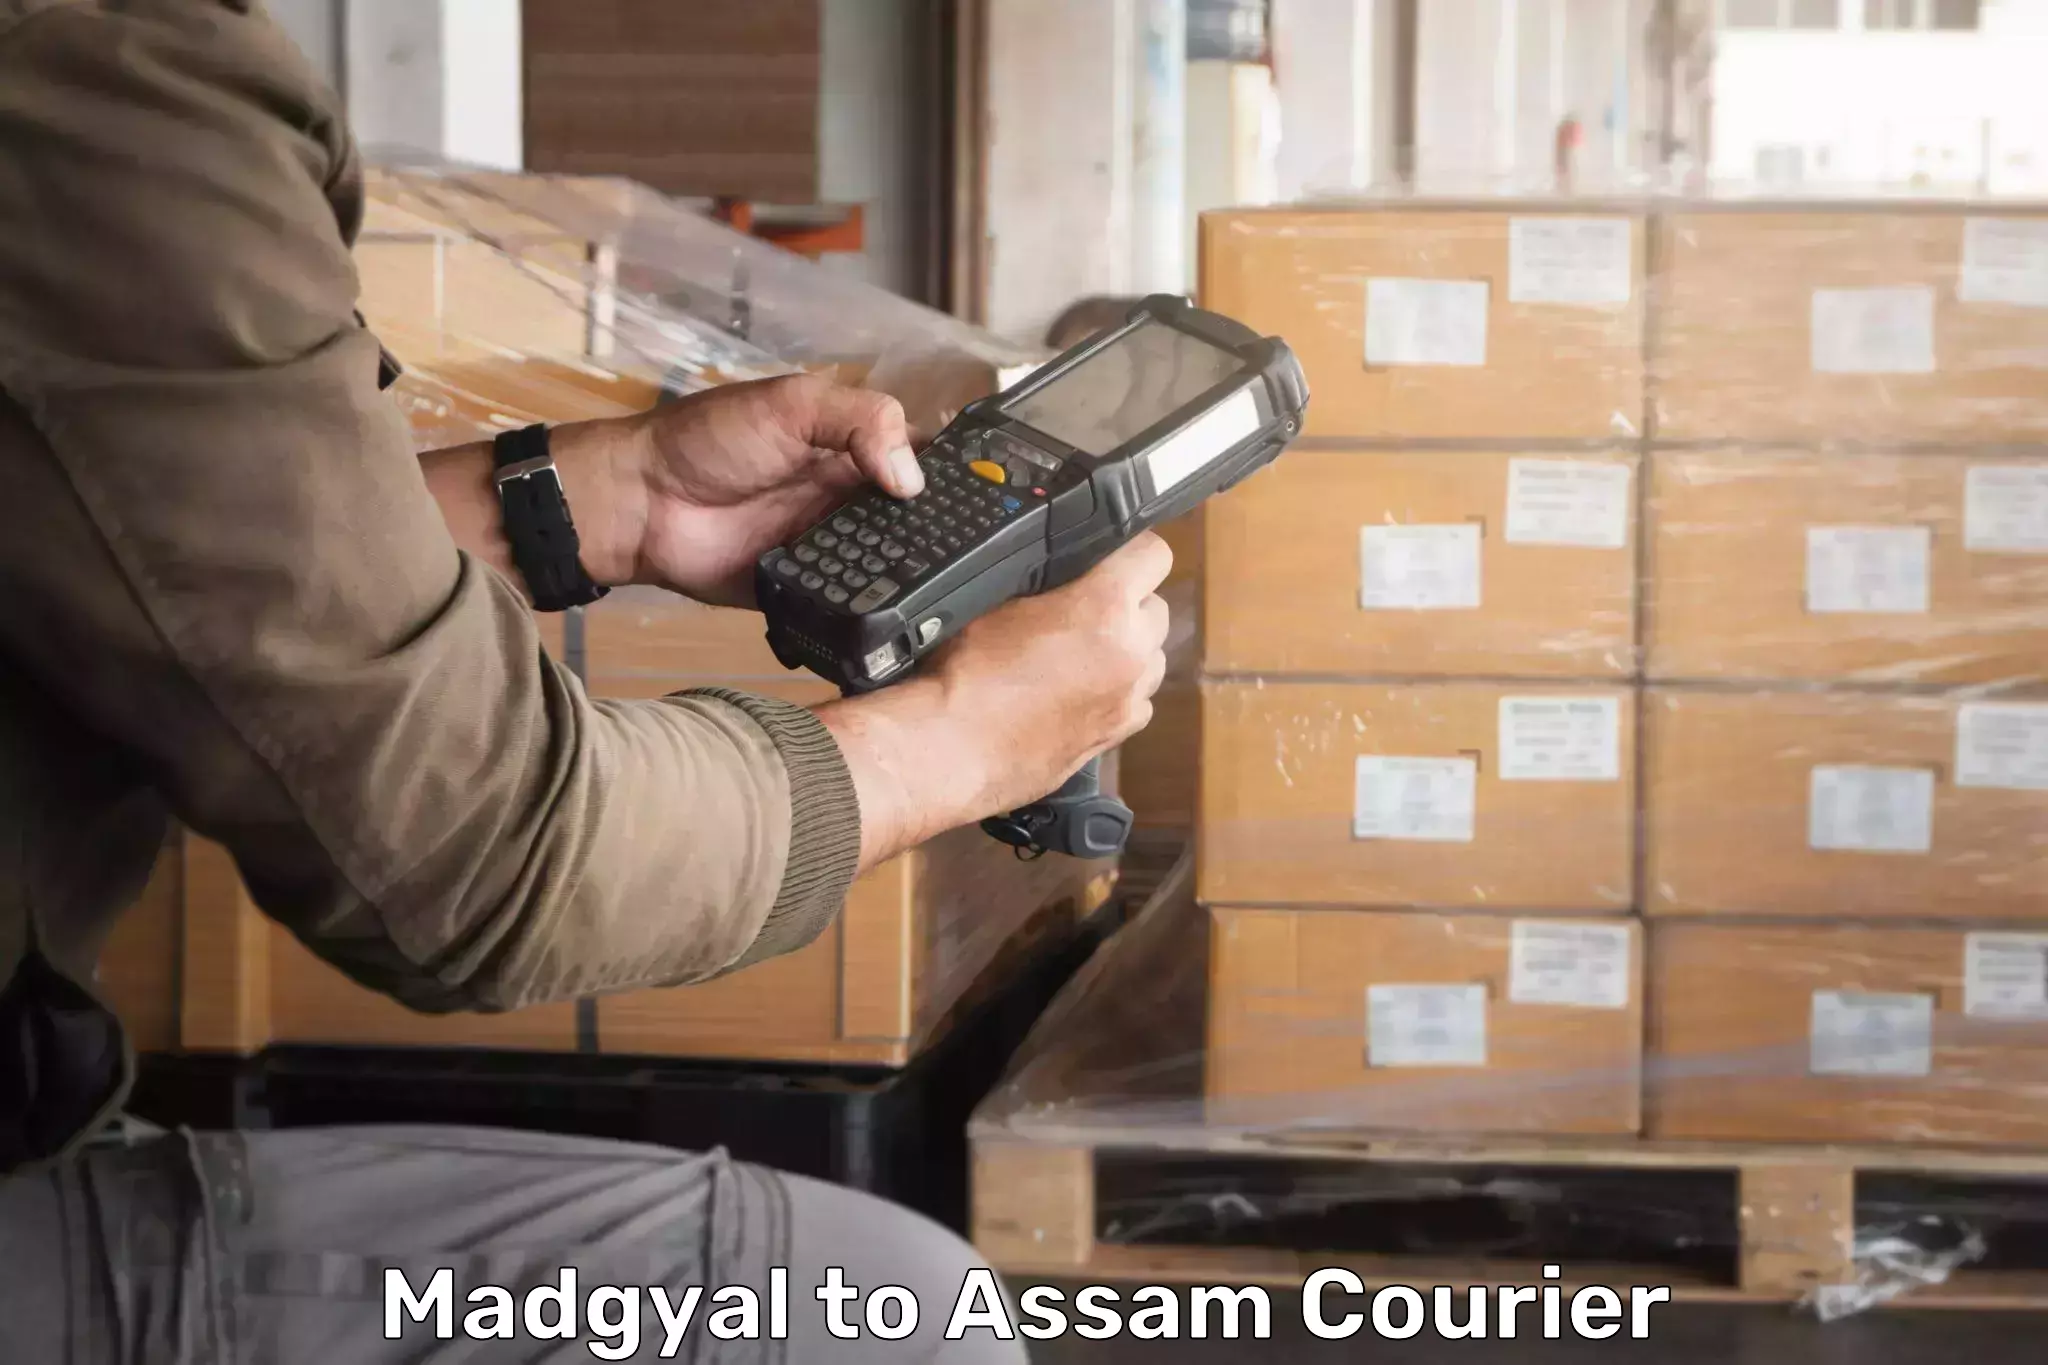 Express logistics providers Madgyal to Amoni